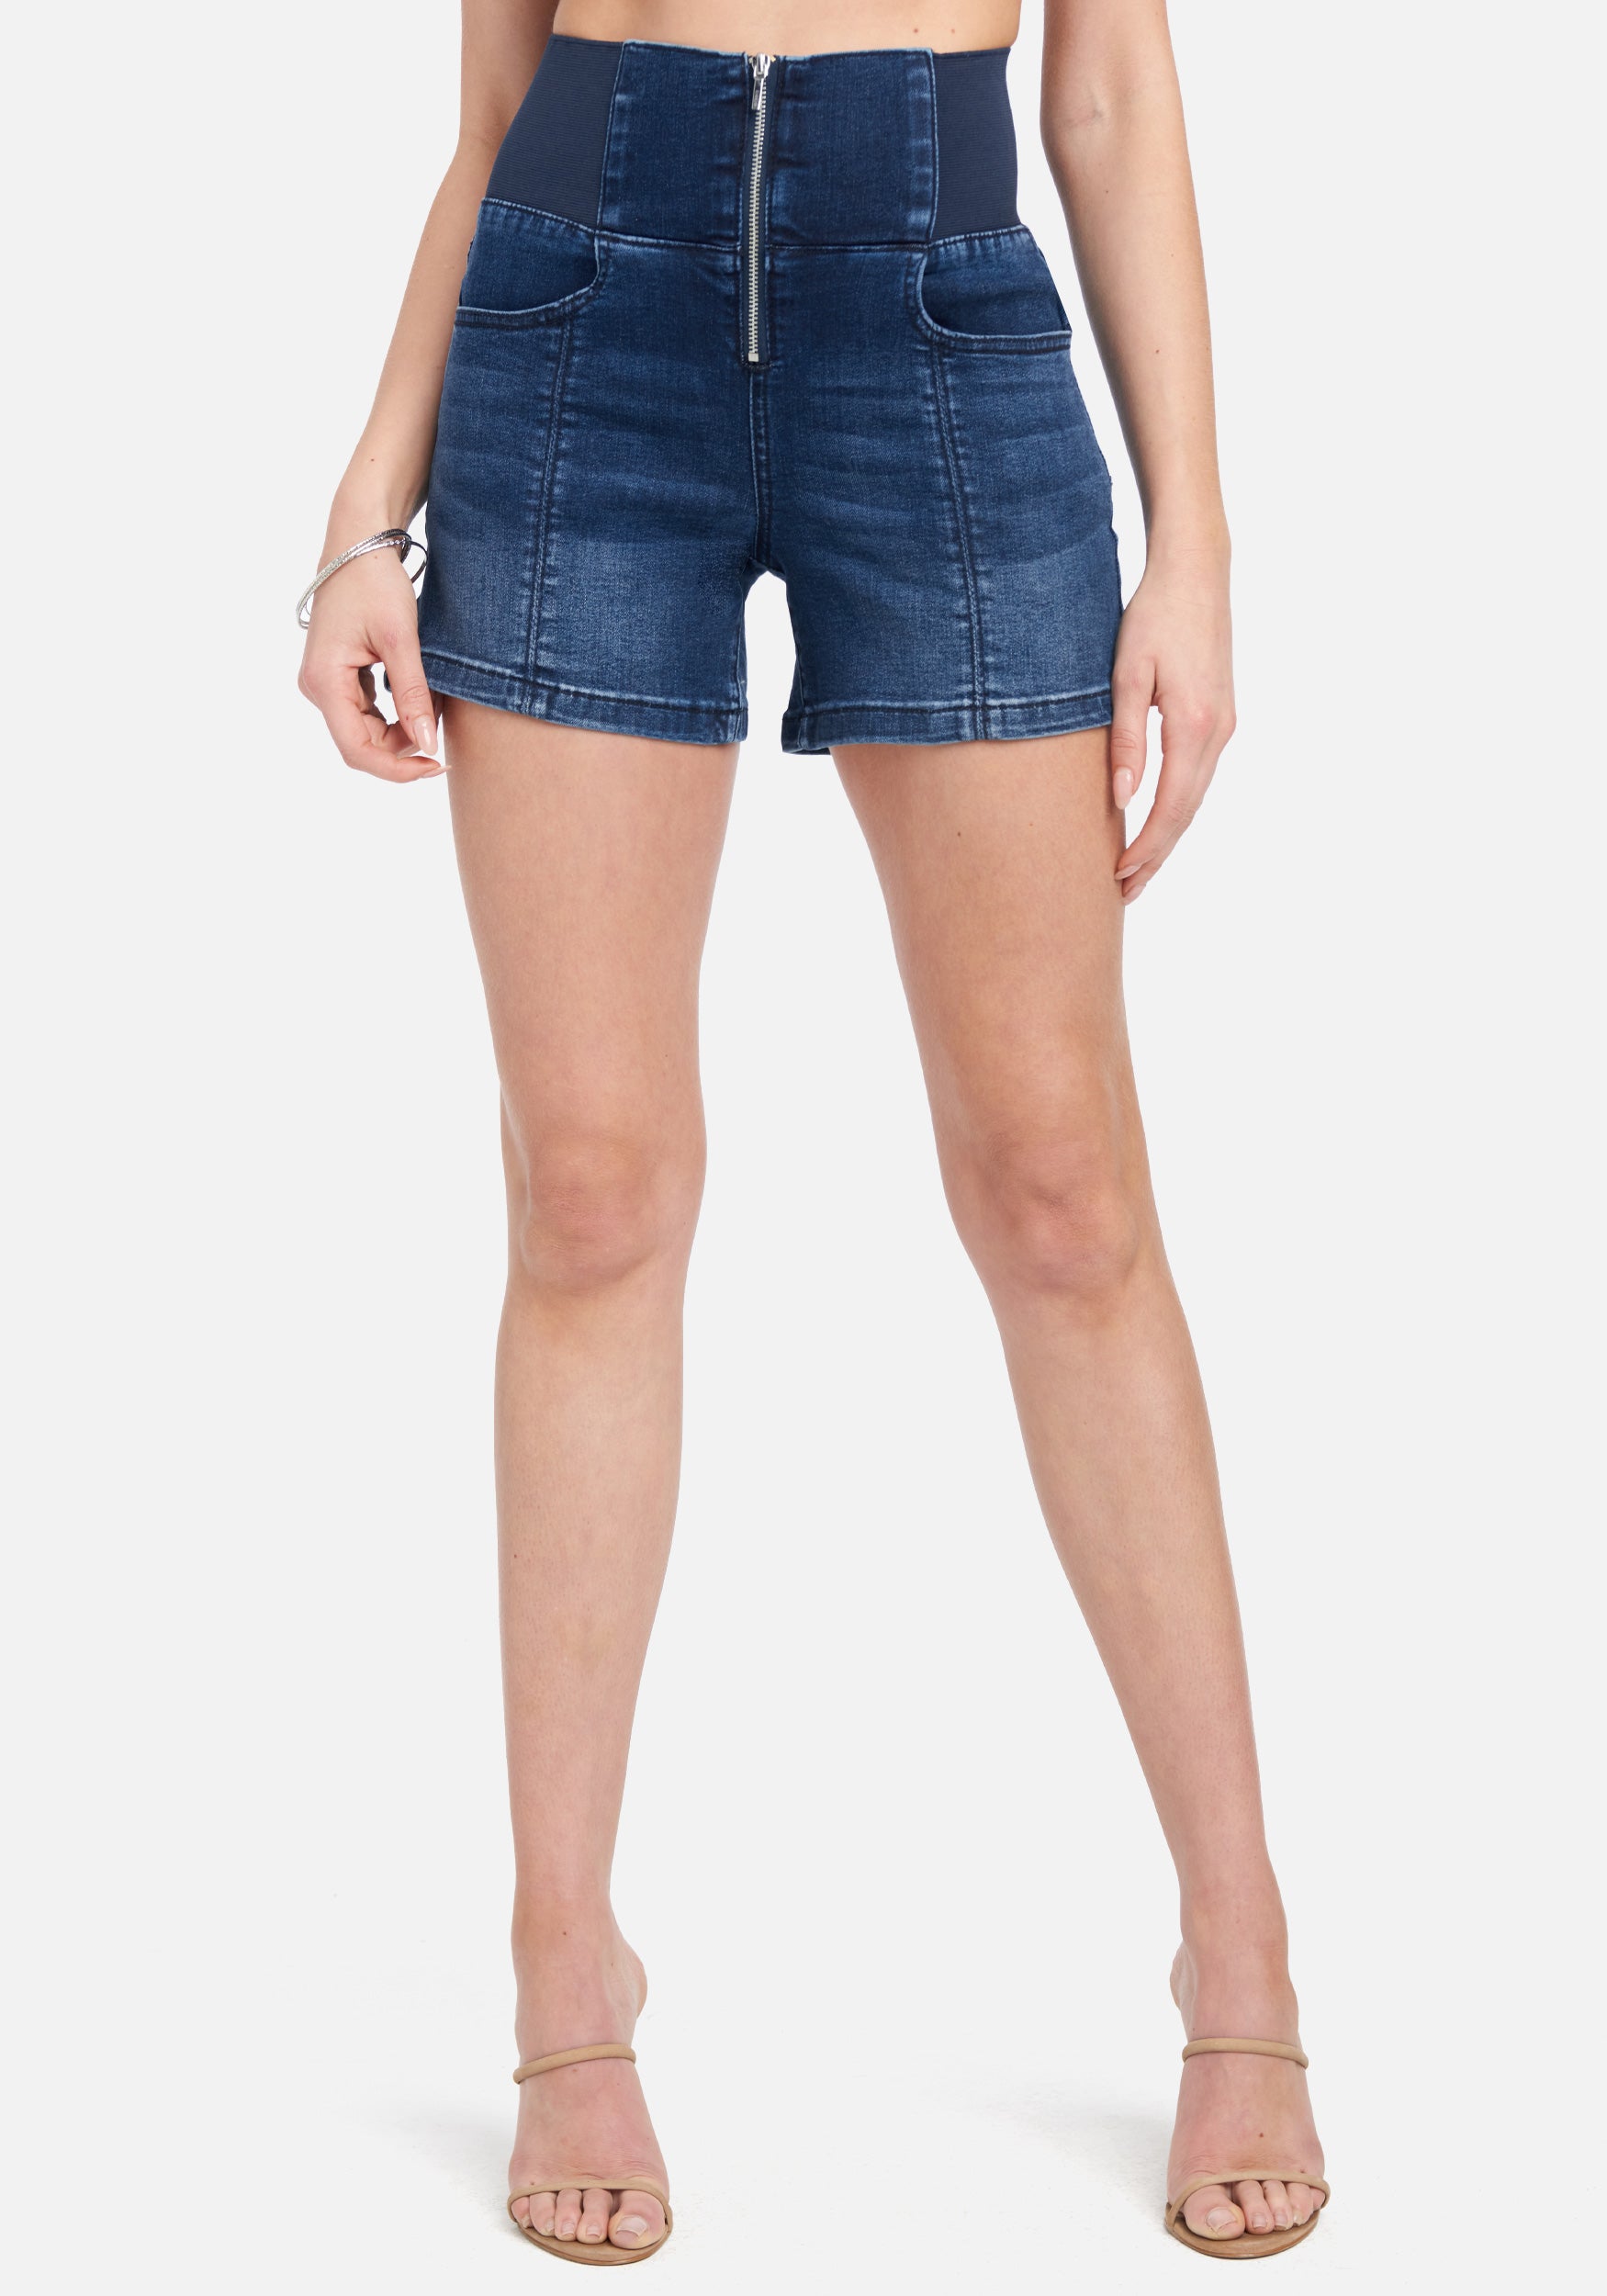 Bebe Women's High Waist Elastic Waist Jean Shorts, Size 32 in Medium Indigo Wash Cotton/Spandex